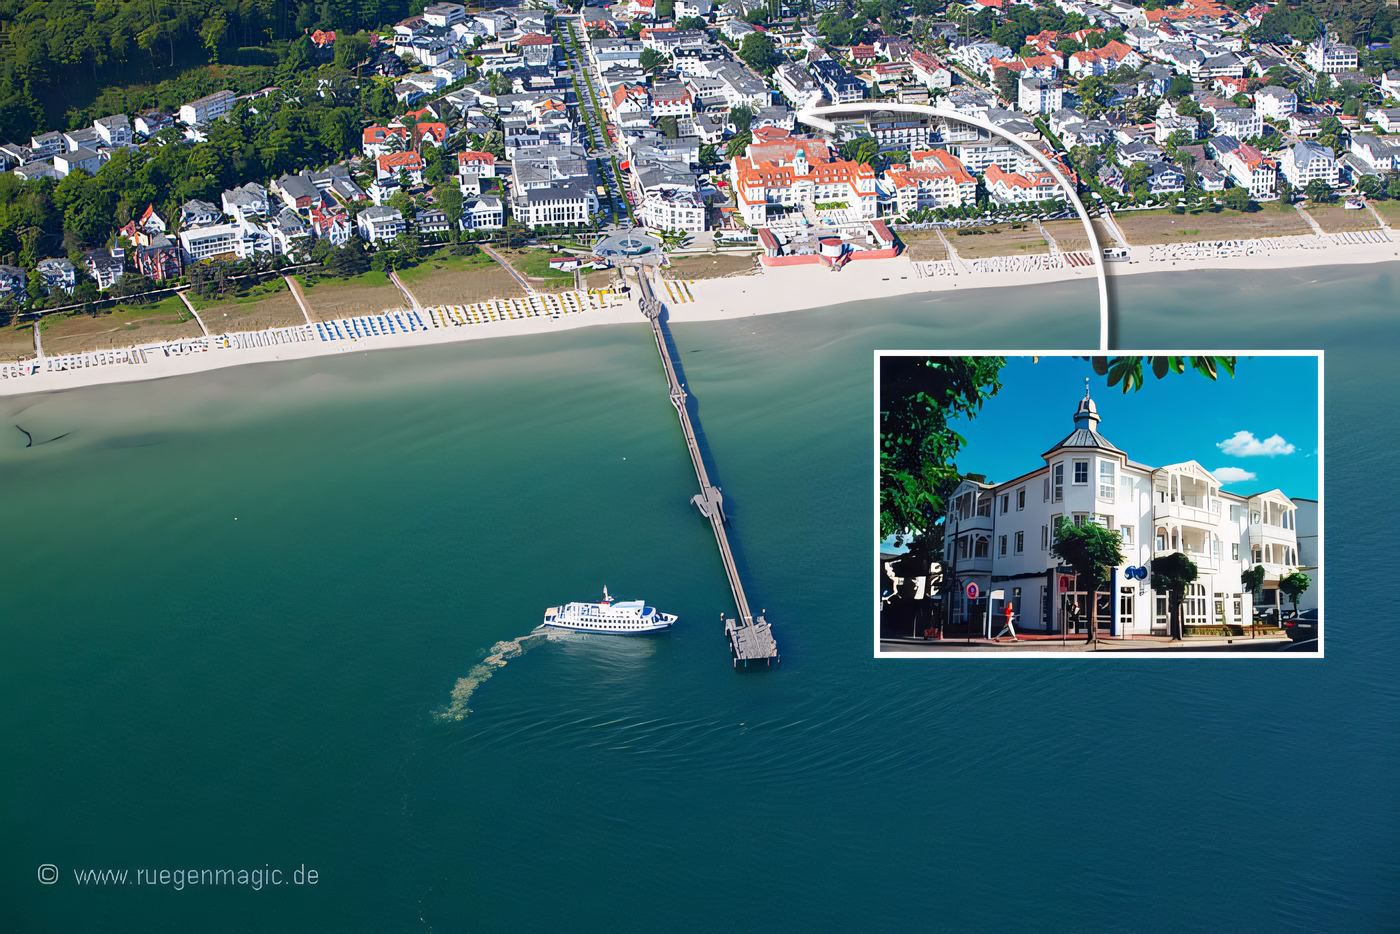 Luftaufnahme der Lage der Ferienwohnung in Binz auf Rügen